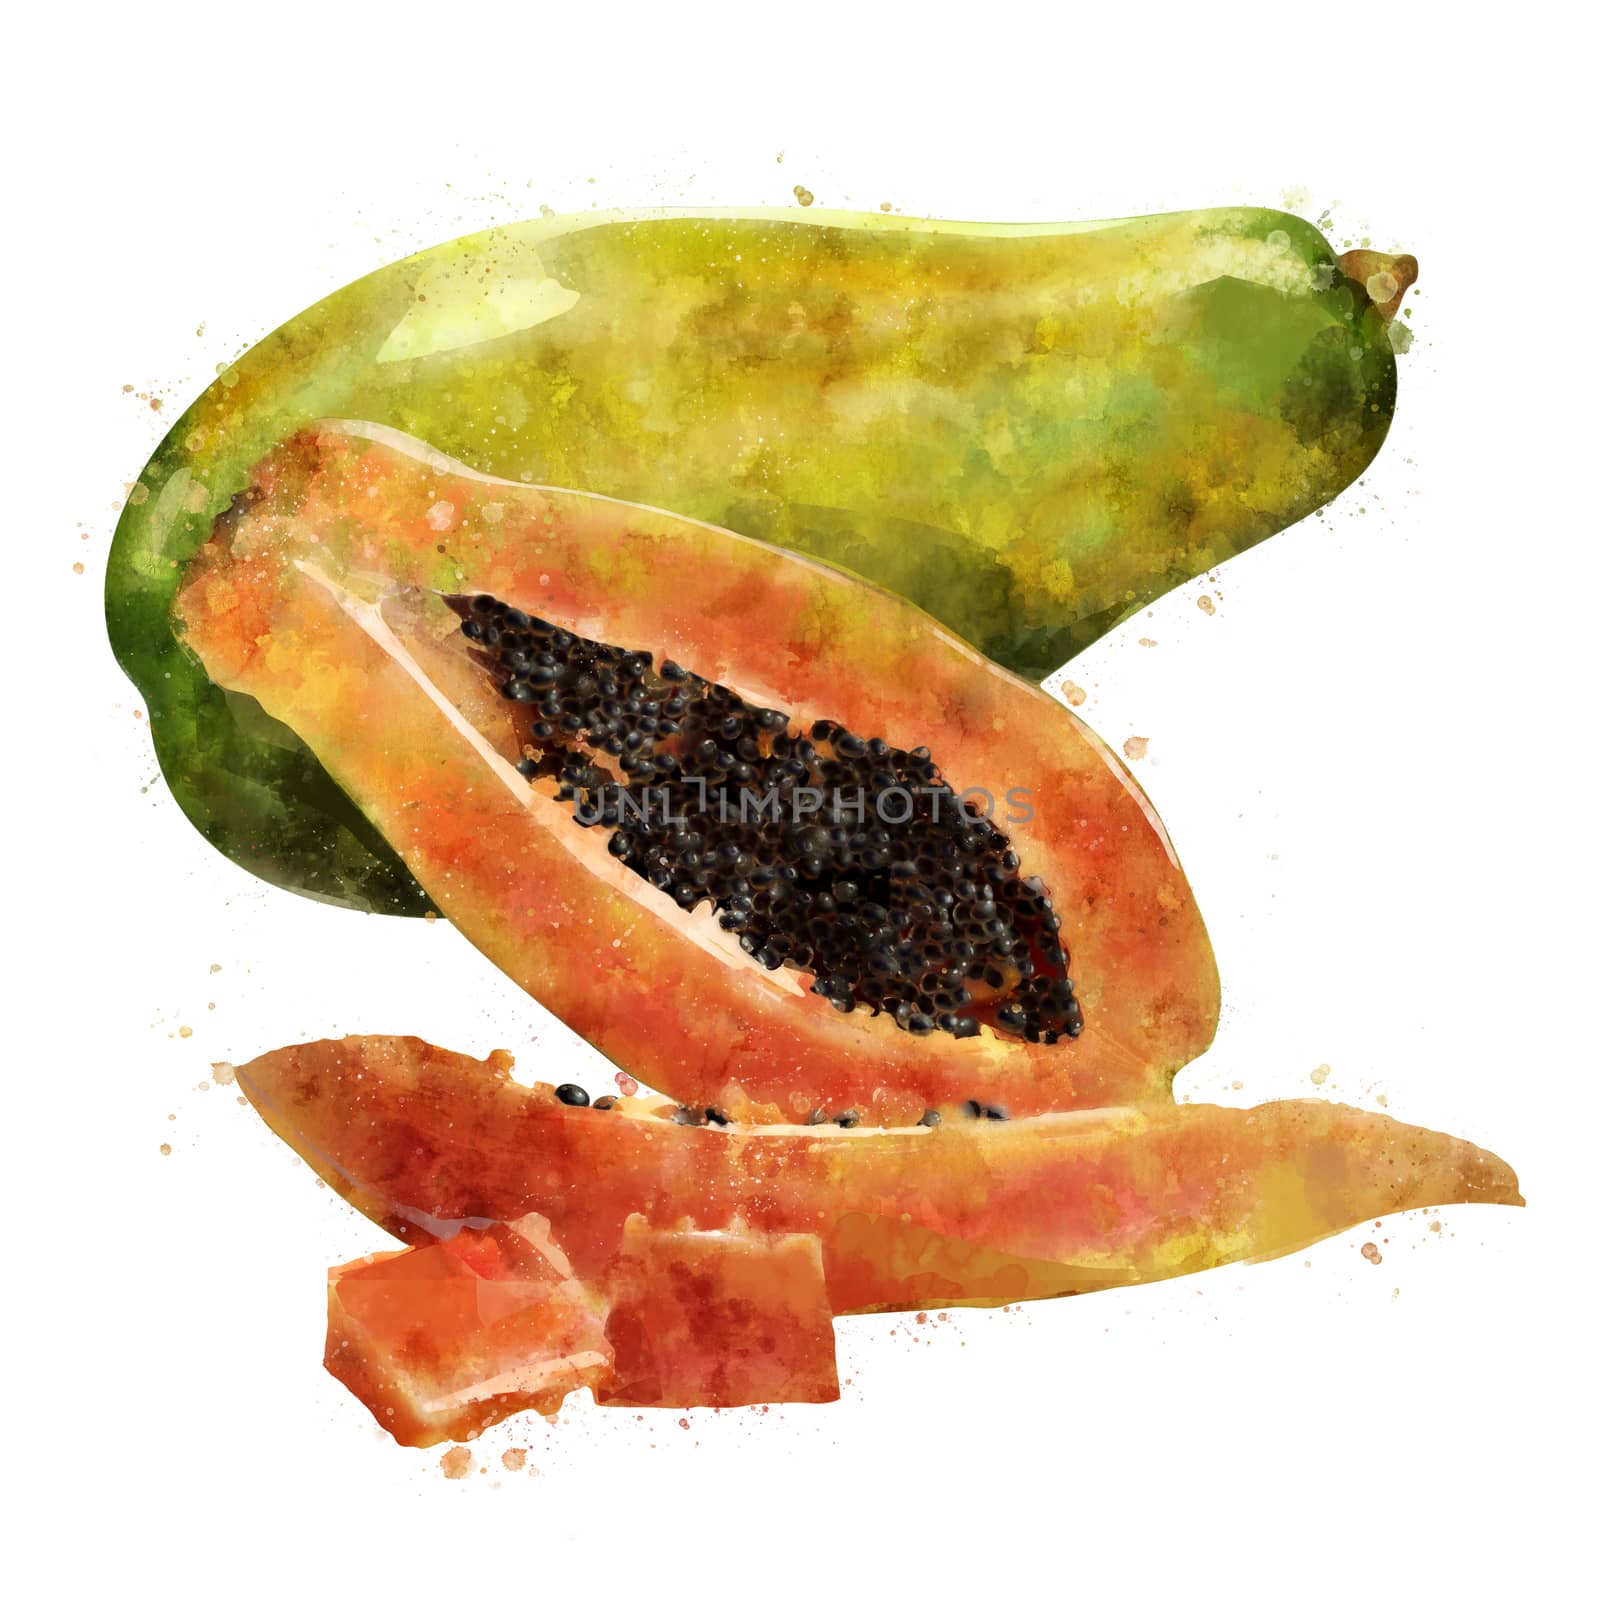 Papaya, isolated hand-painted illustration on a white background